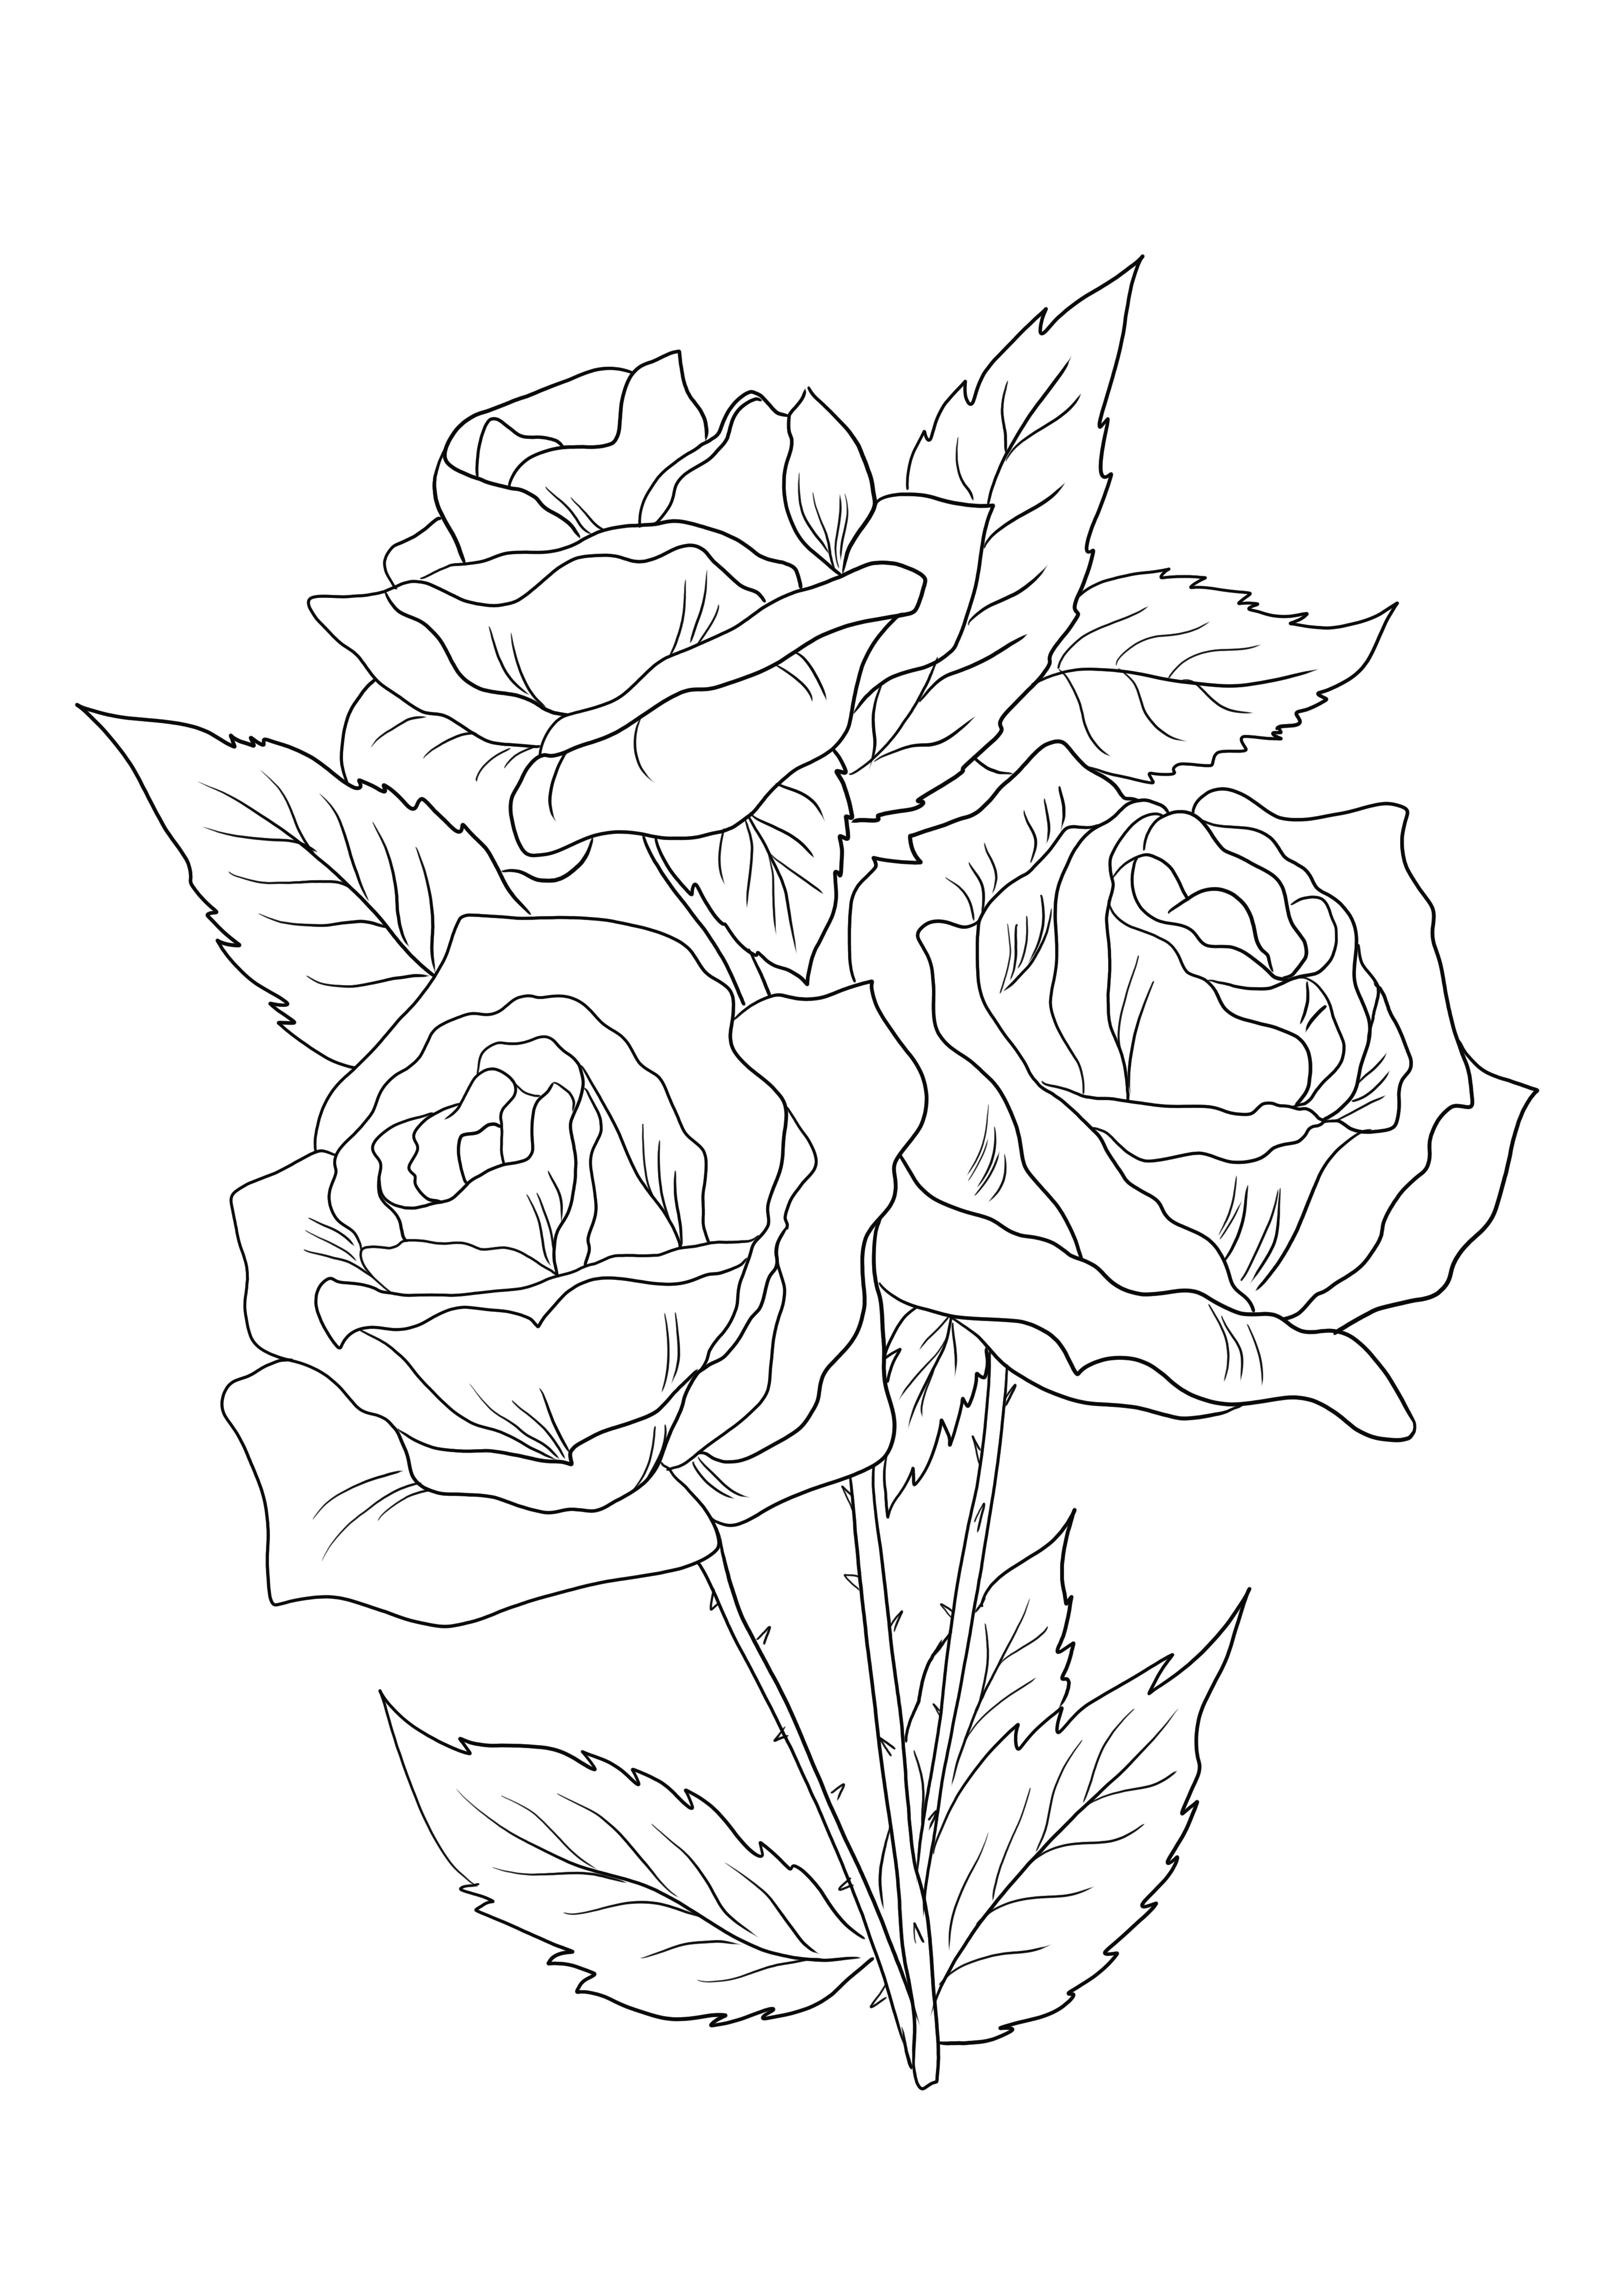 Tiga mawar mekar harus diunduh dan diwarnai secara gratis dan belajar tentang bunga